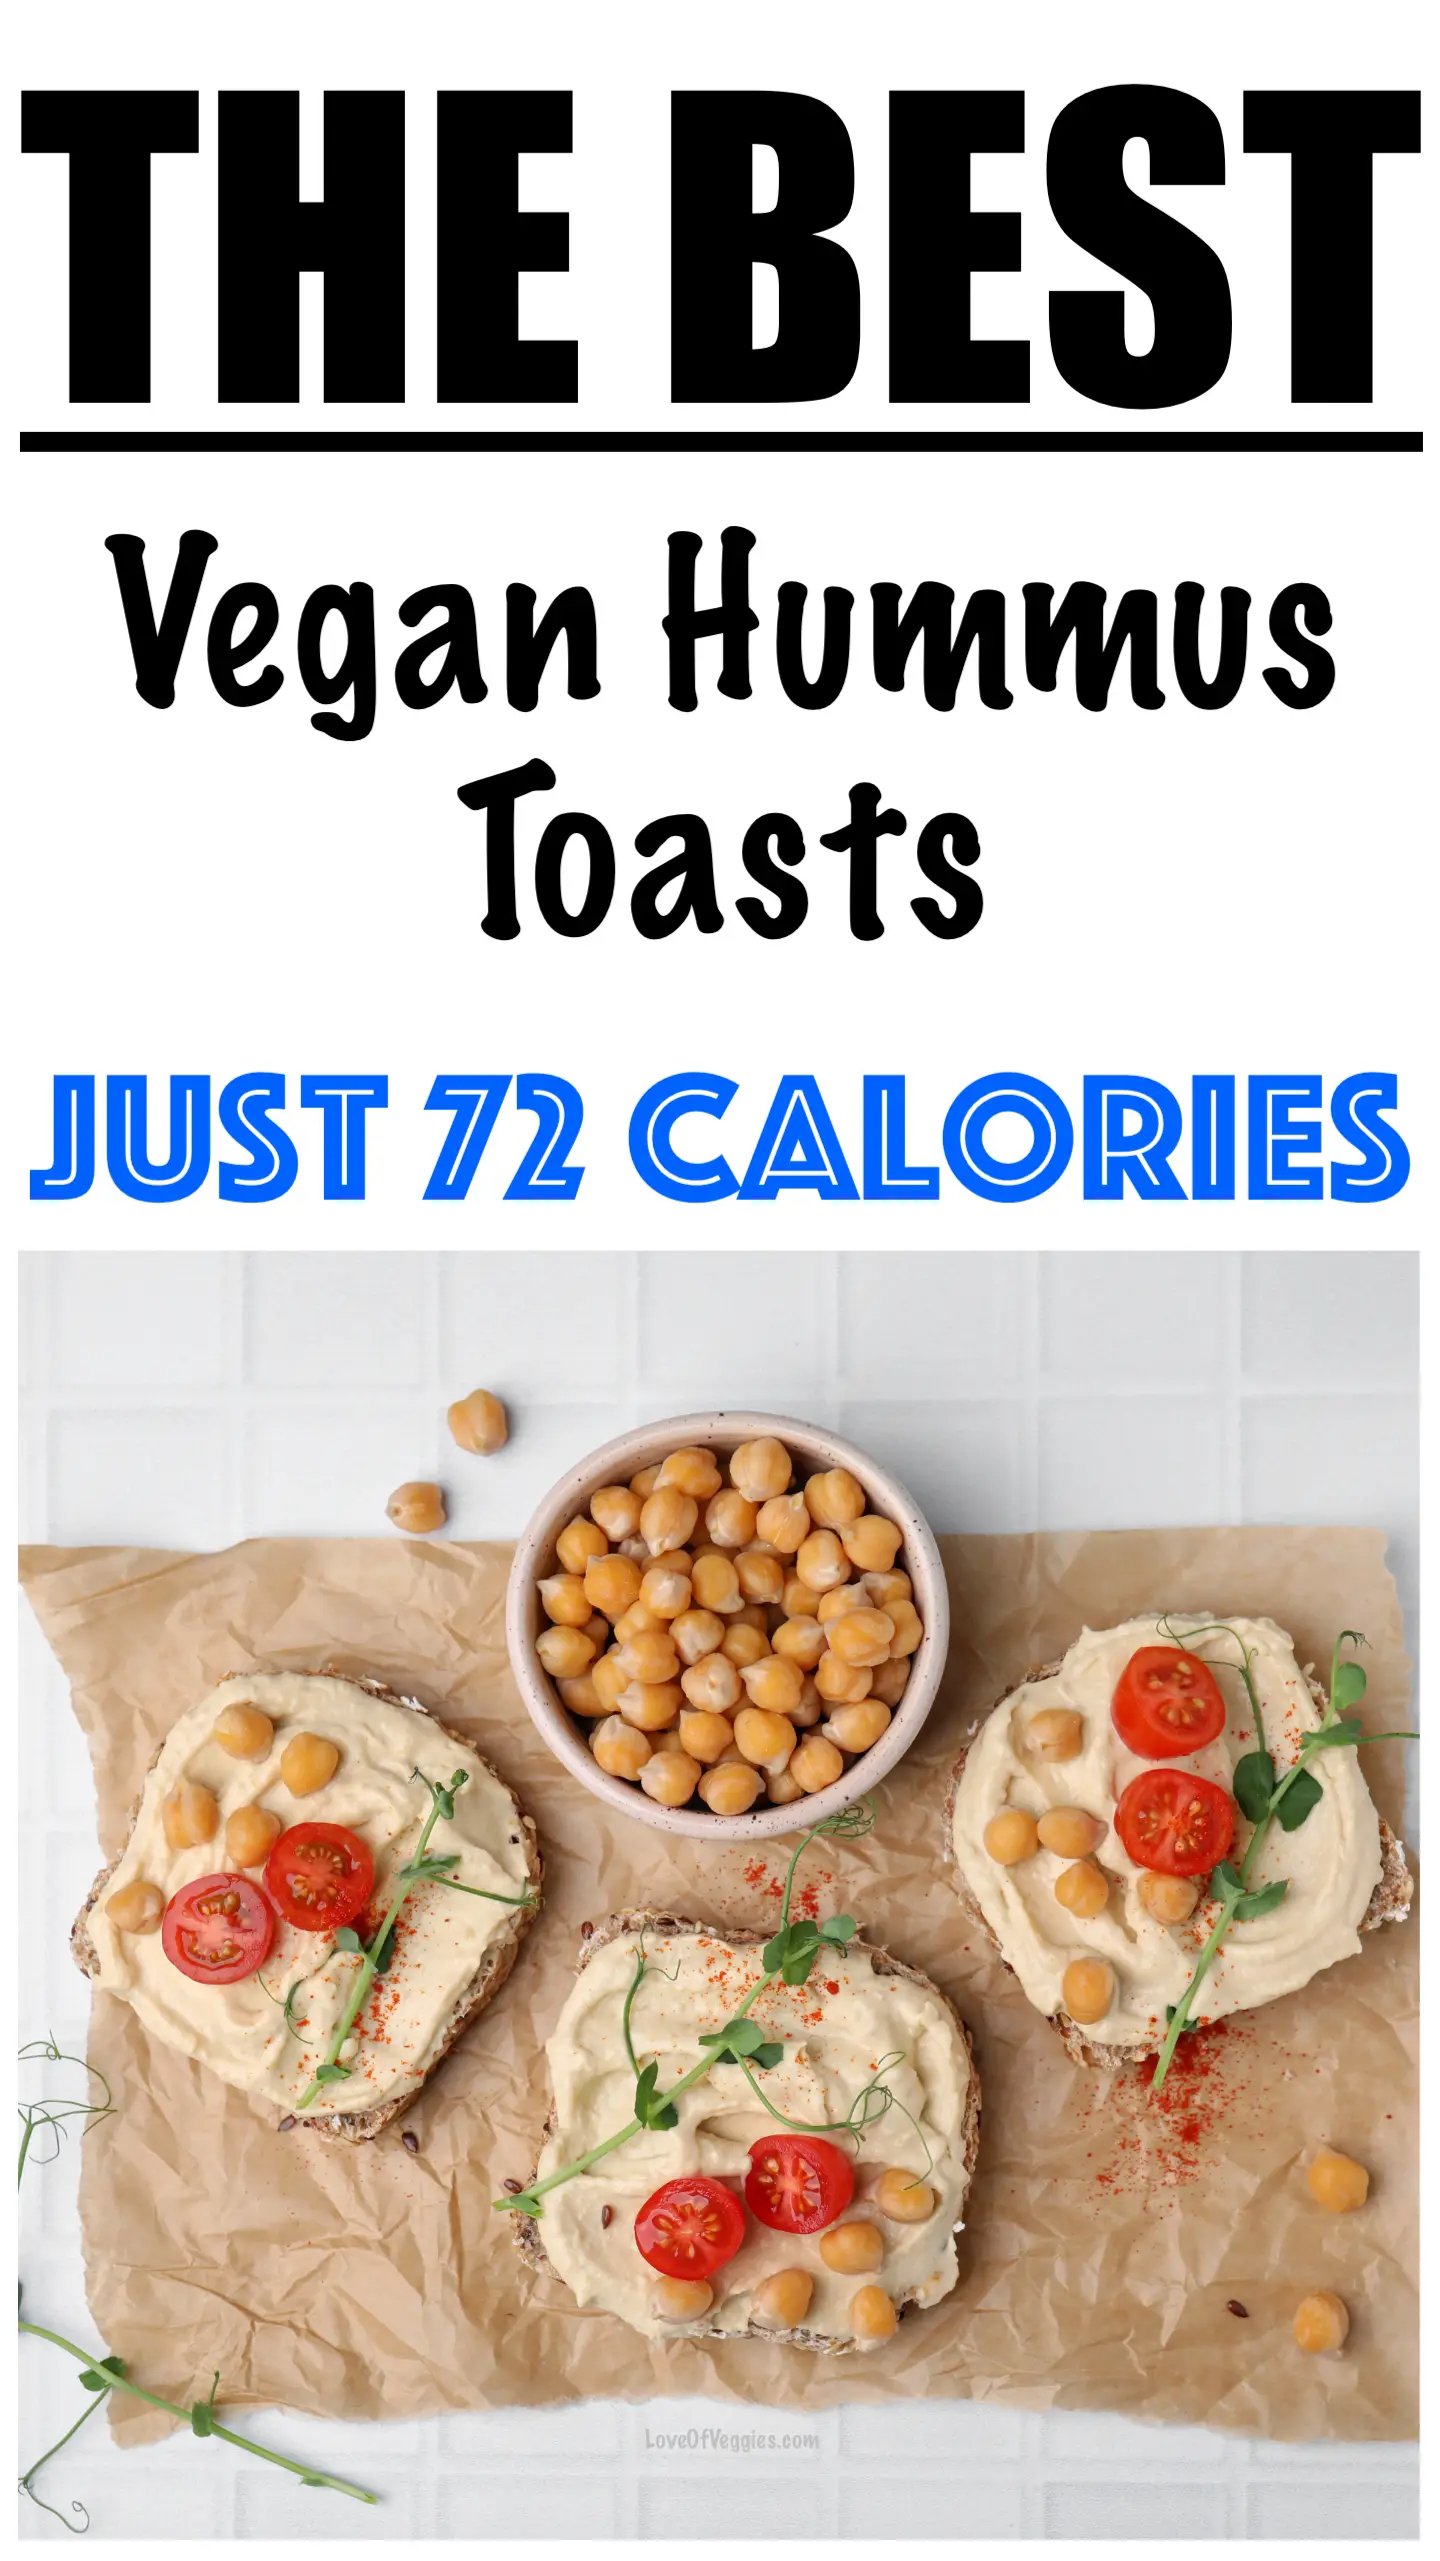 Vegan Hummus Toast Recipe